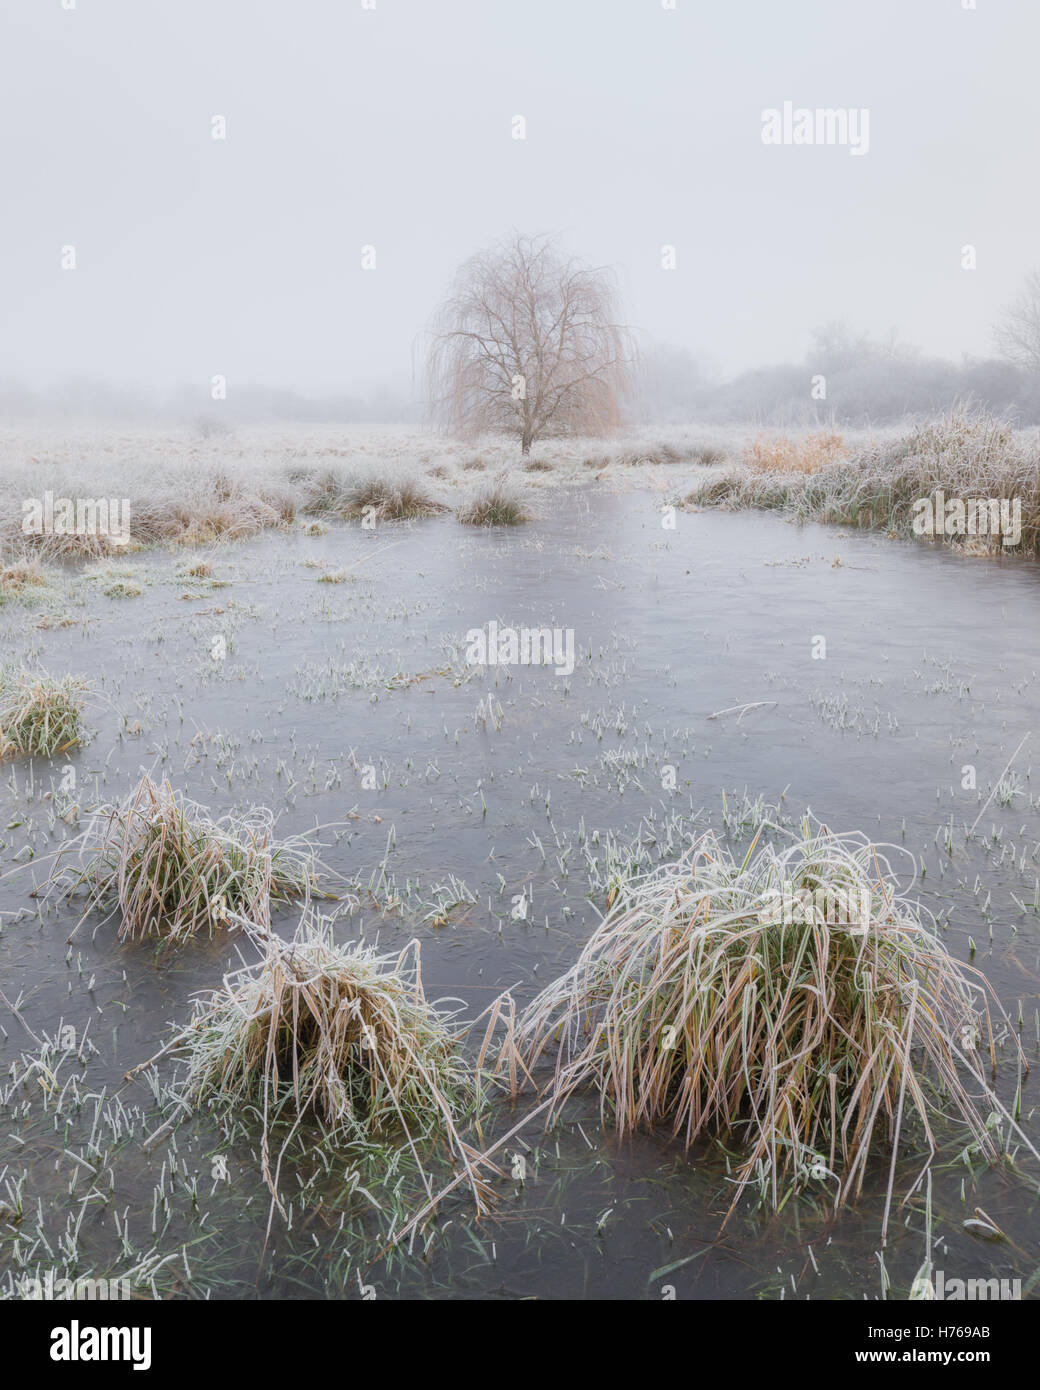 Frozen landscape, Ely, Cambridgeshire, England, United Kingdom Stock Photo